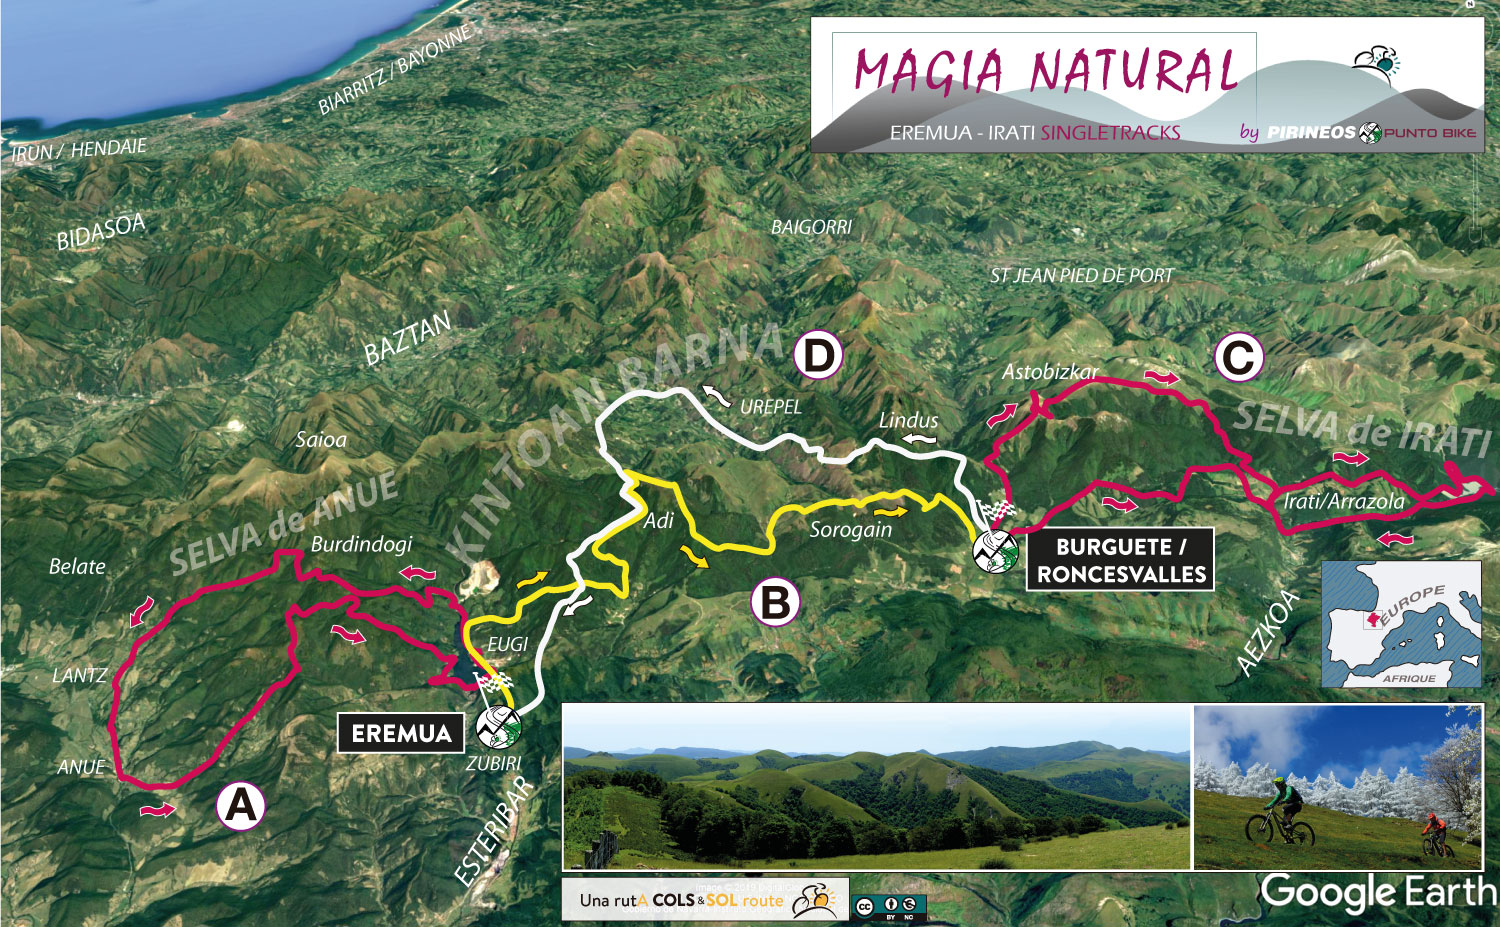 Map-Magia-Natural-Eremua-Roncesvalles-mtb